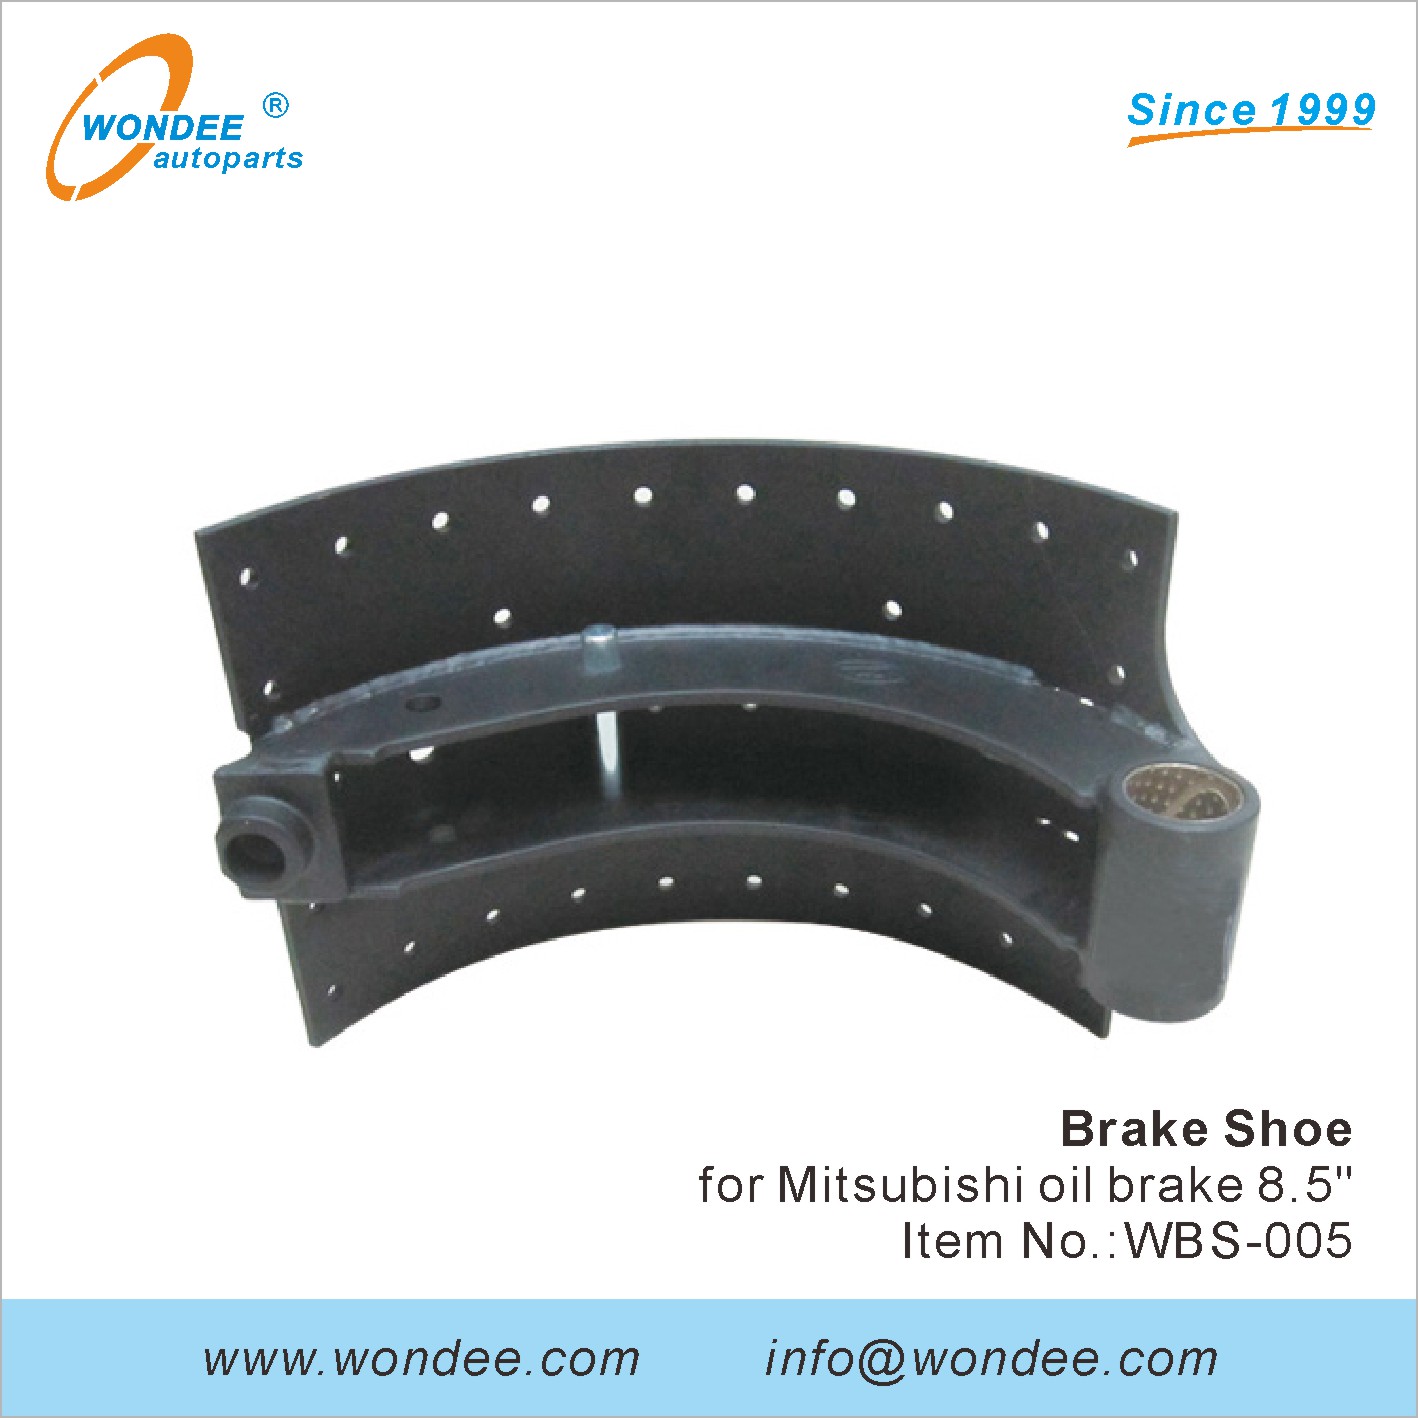 WONDEE brake shoe (5)